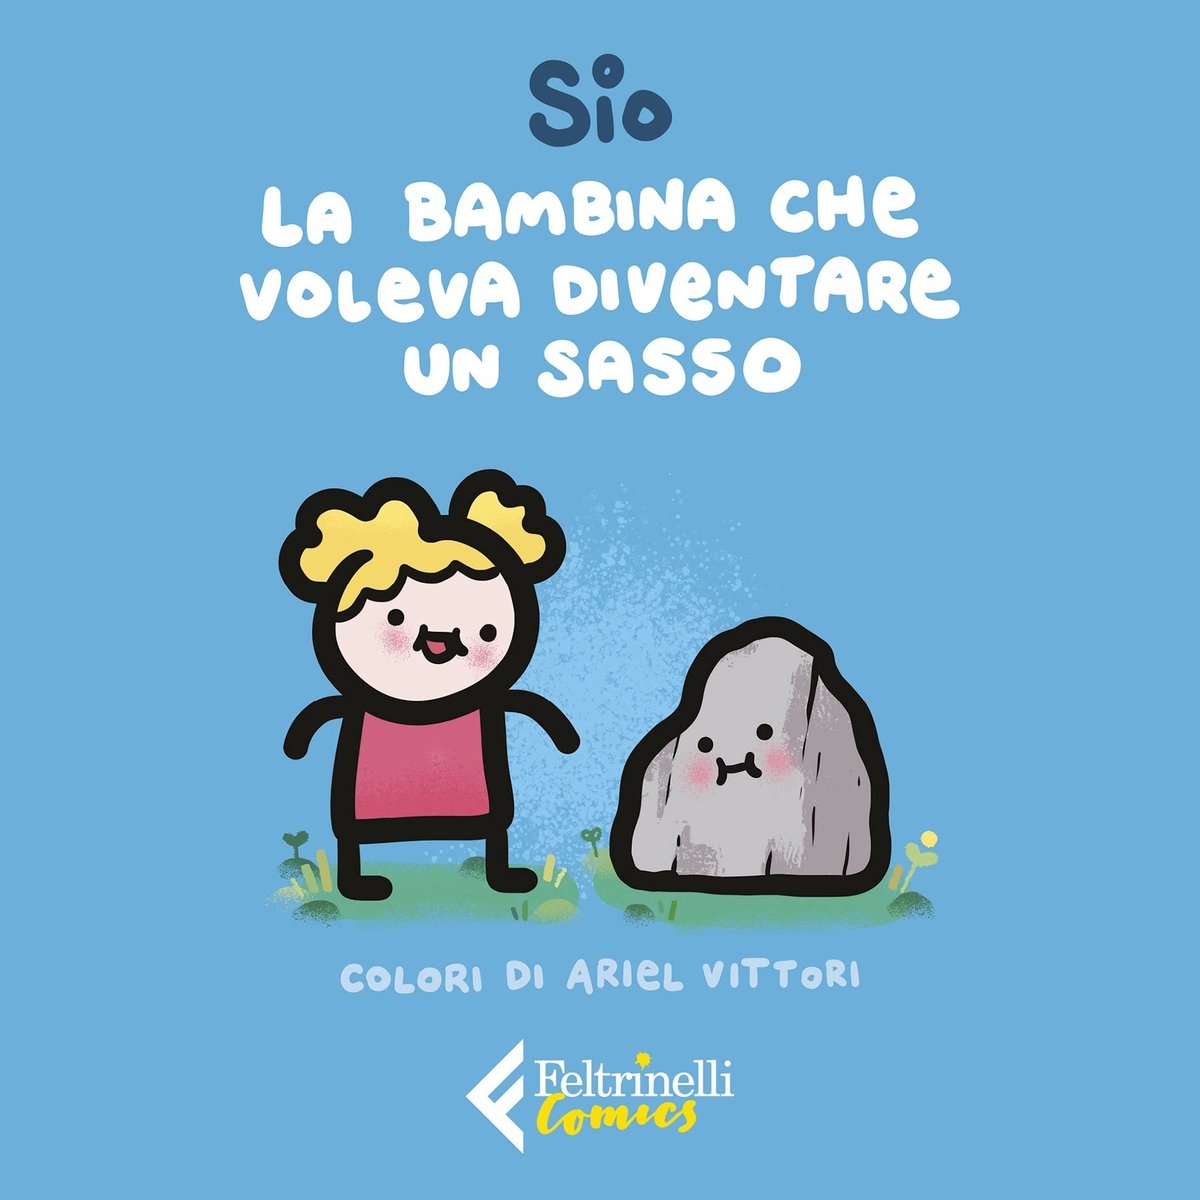 Sio – La bambina che voleva diventare un sasso (Feltrinelli Comics, Milano 2021)